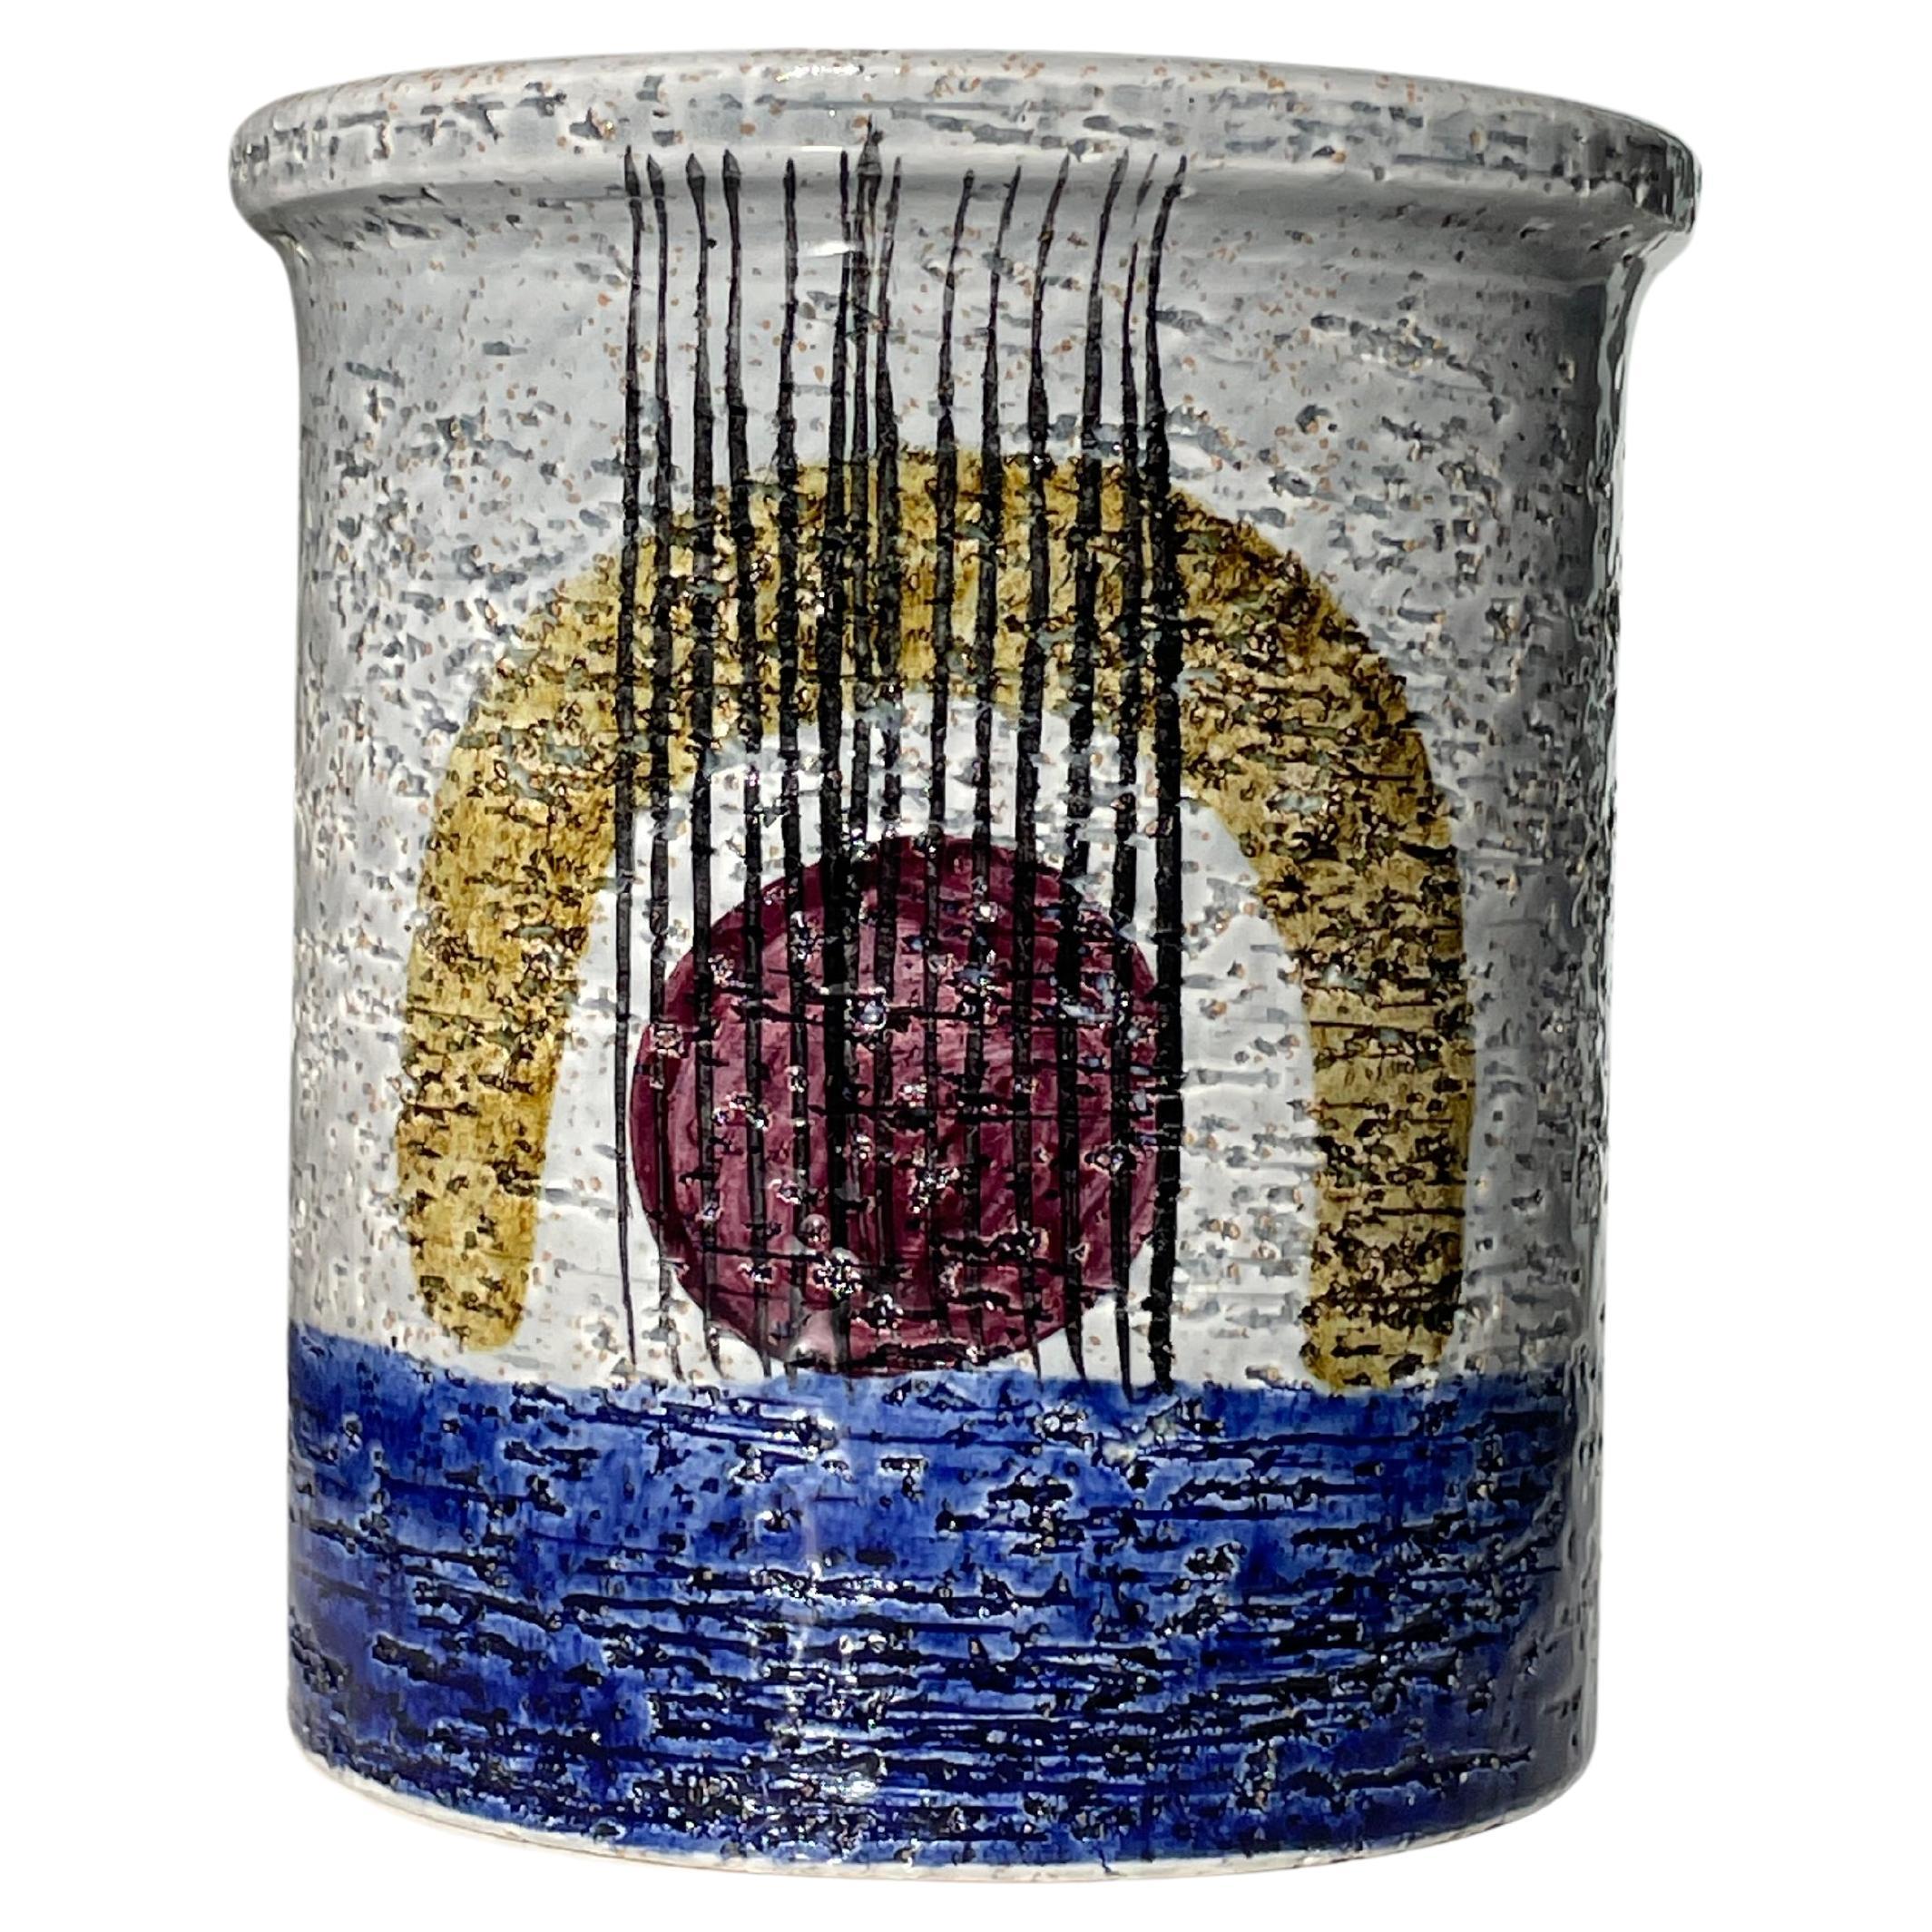 Vase de collection en céramique brillante en terre chamottée, fait et décoré à la main par le designer suédois Olle Alberius. Entièrement émaillé avec une base gris clair et une partie inférieure du vase d'un bleu profond. De chaque côté et